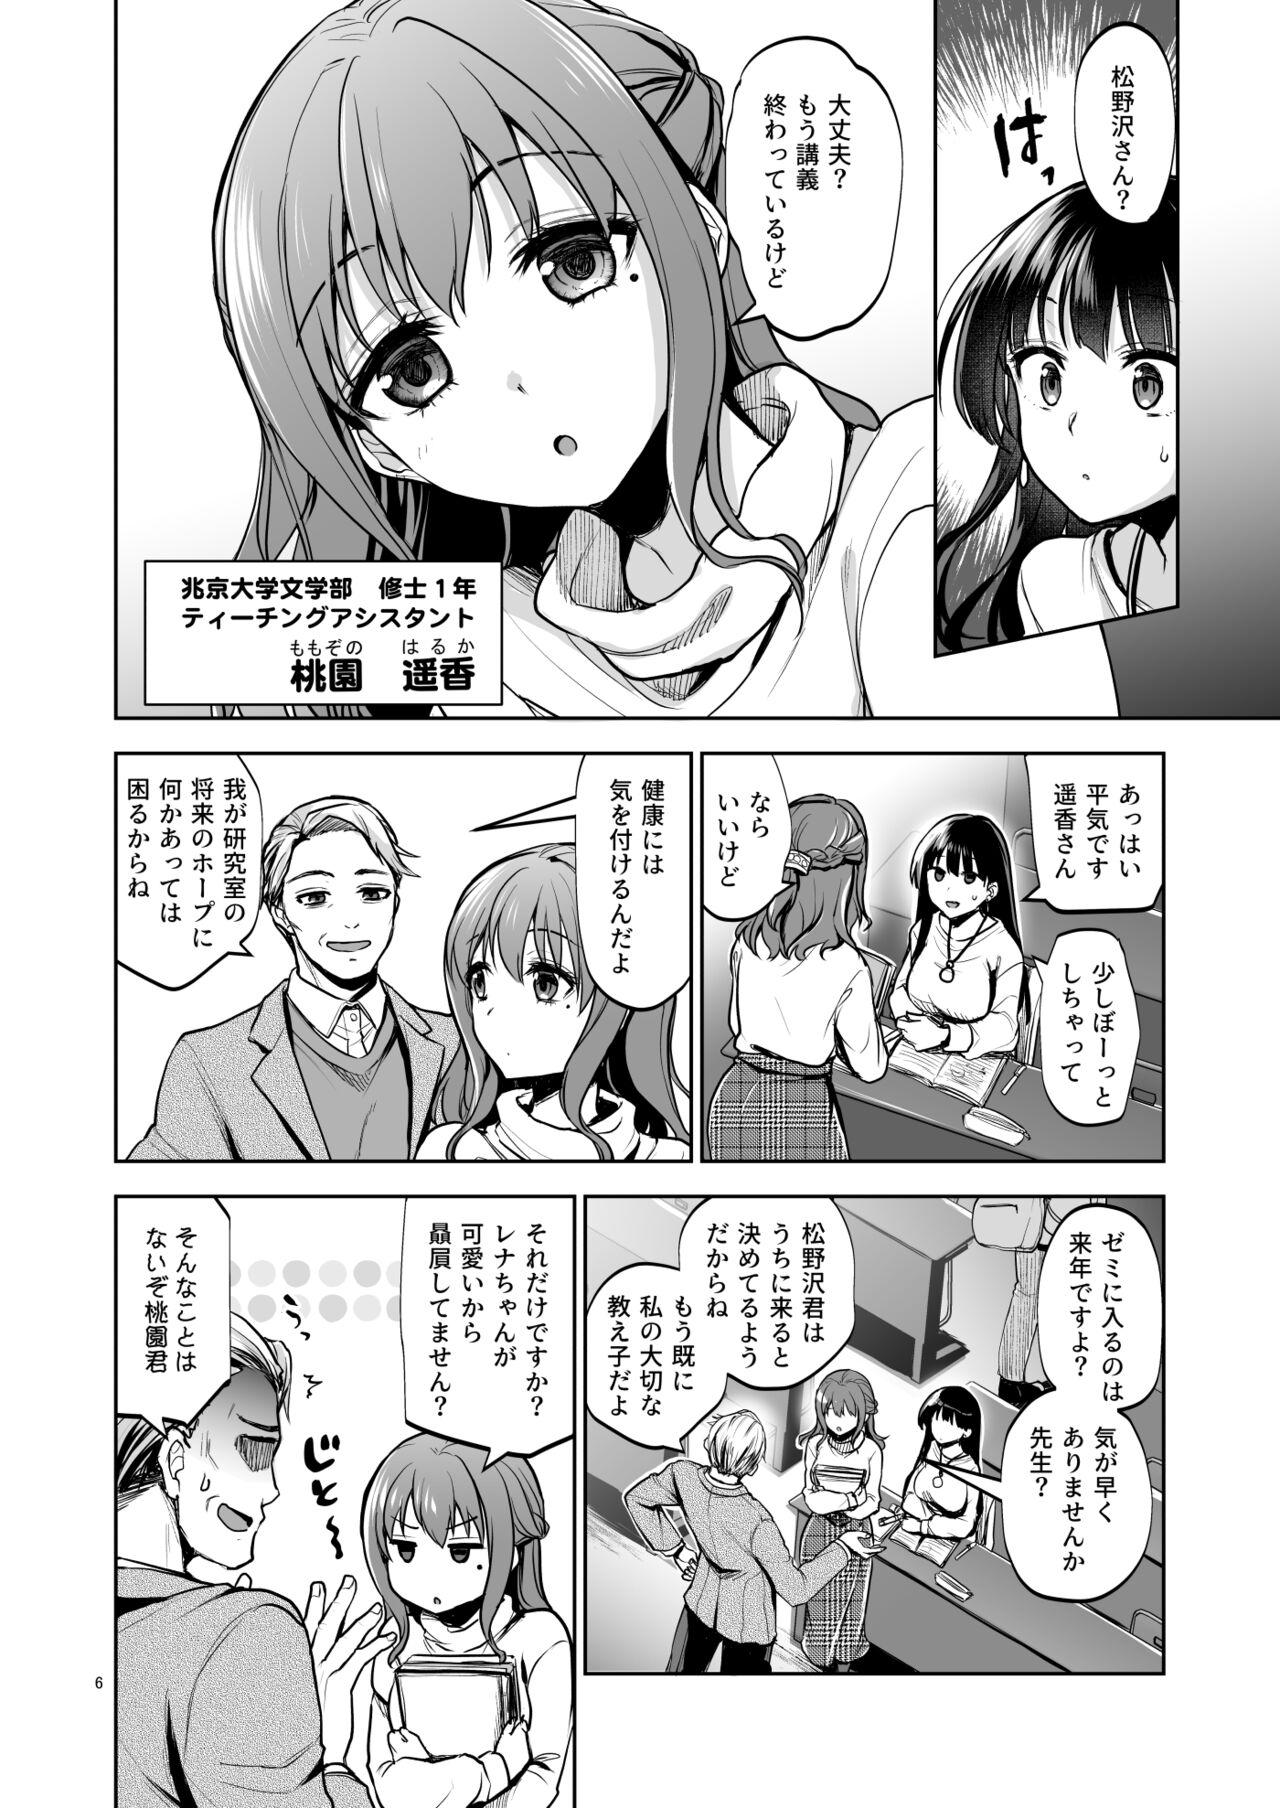 Peluda Omoide wa Yogosareru 2 - Original Amadora - Page 5